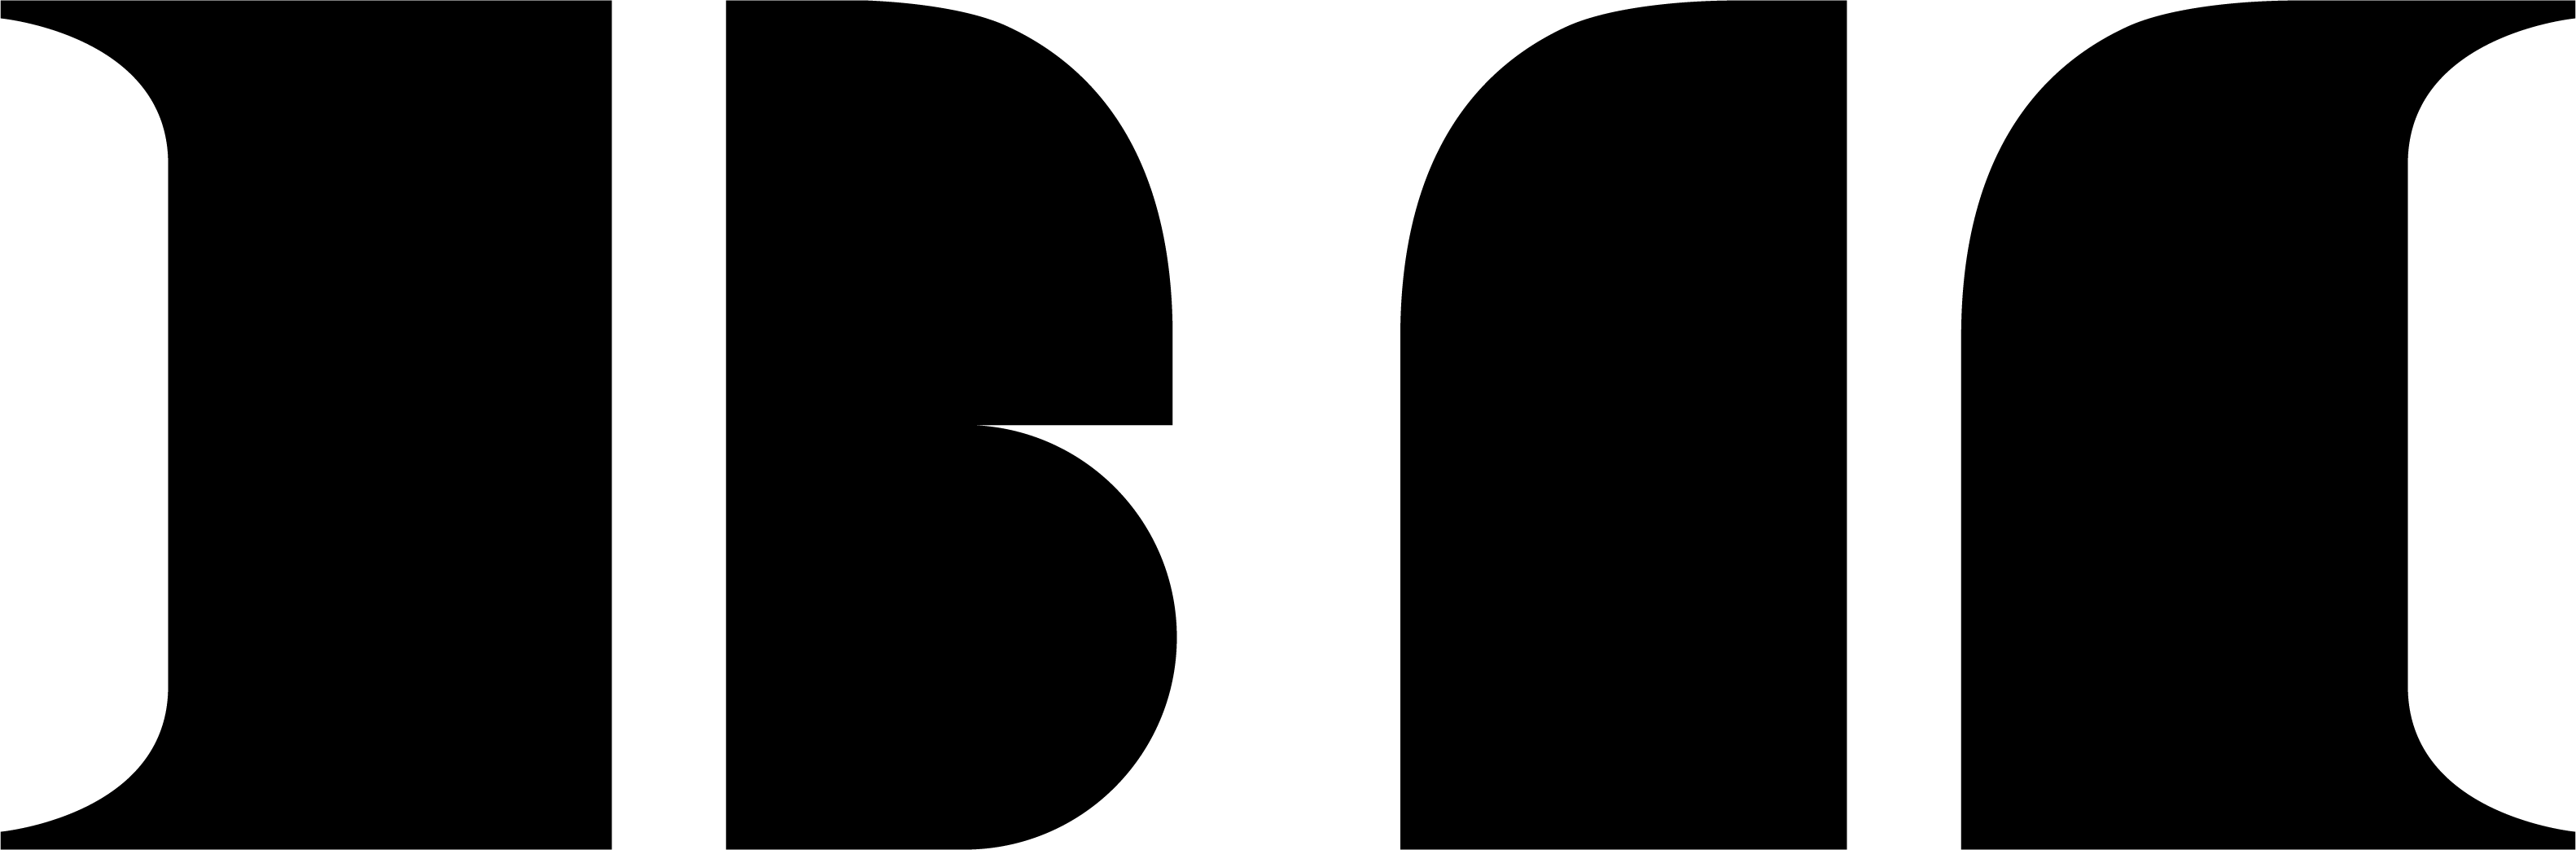 babymonster logo